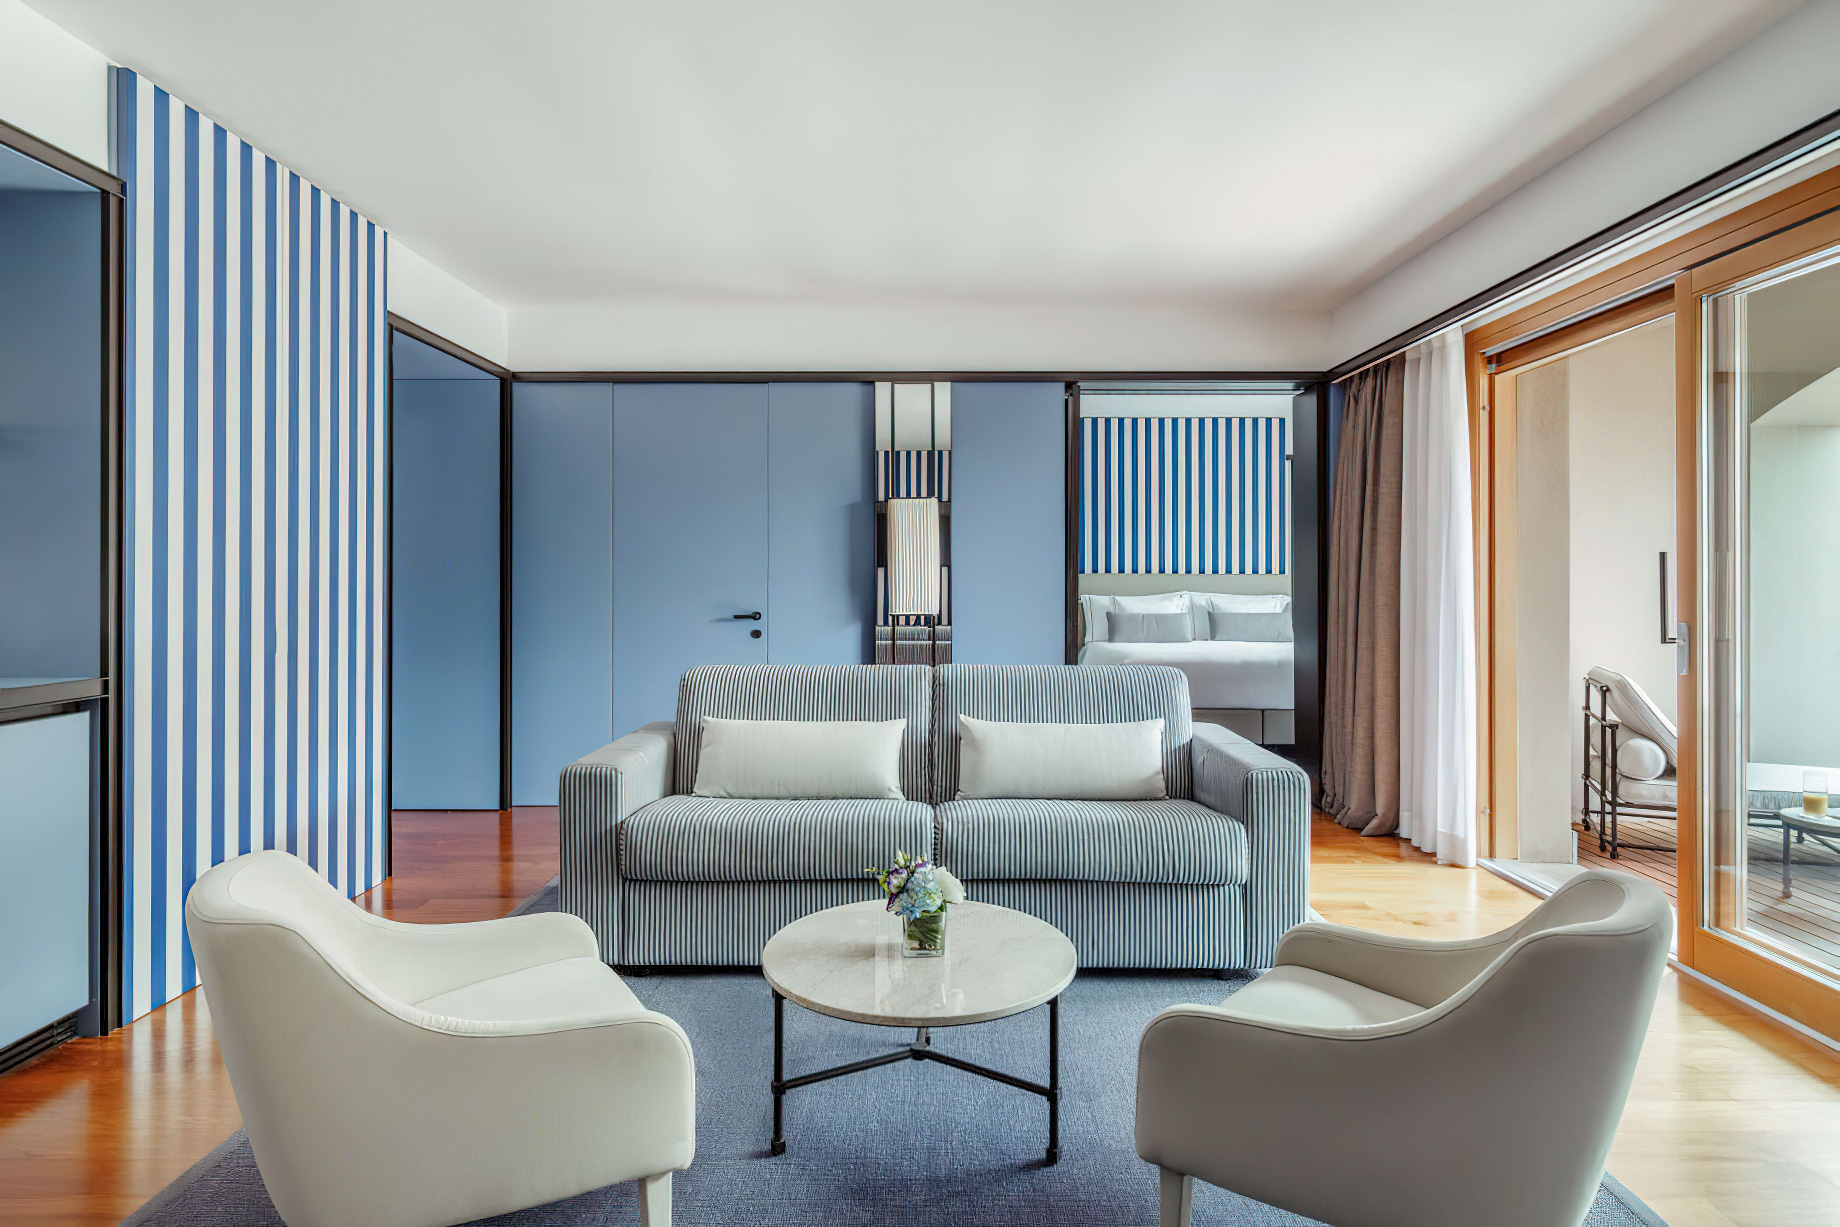 Tivoli Portopiccolo Sistiana Resort & Spa – Sistiana, Italy – Executive Suite